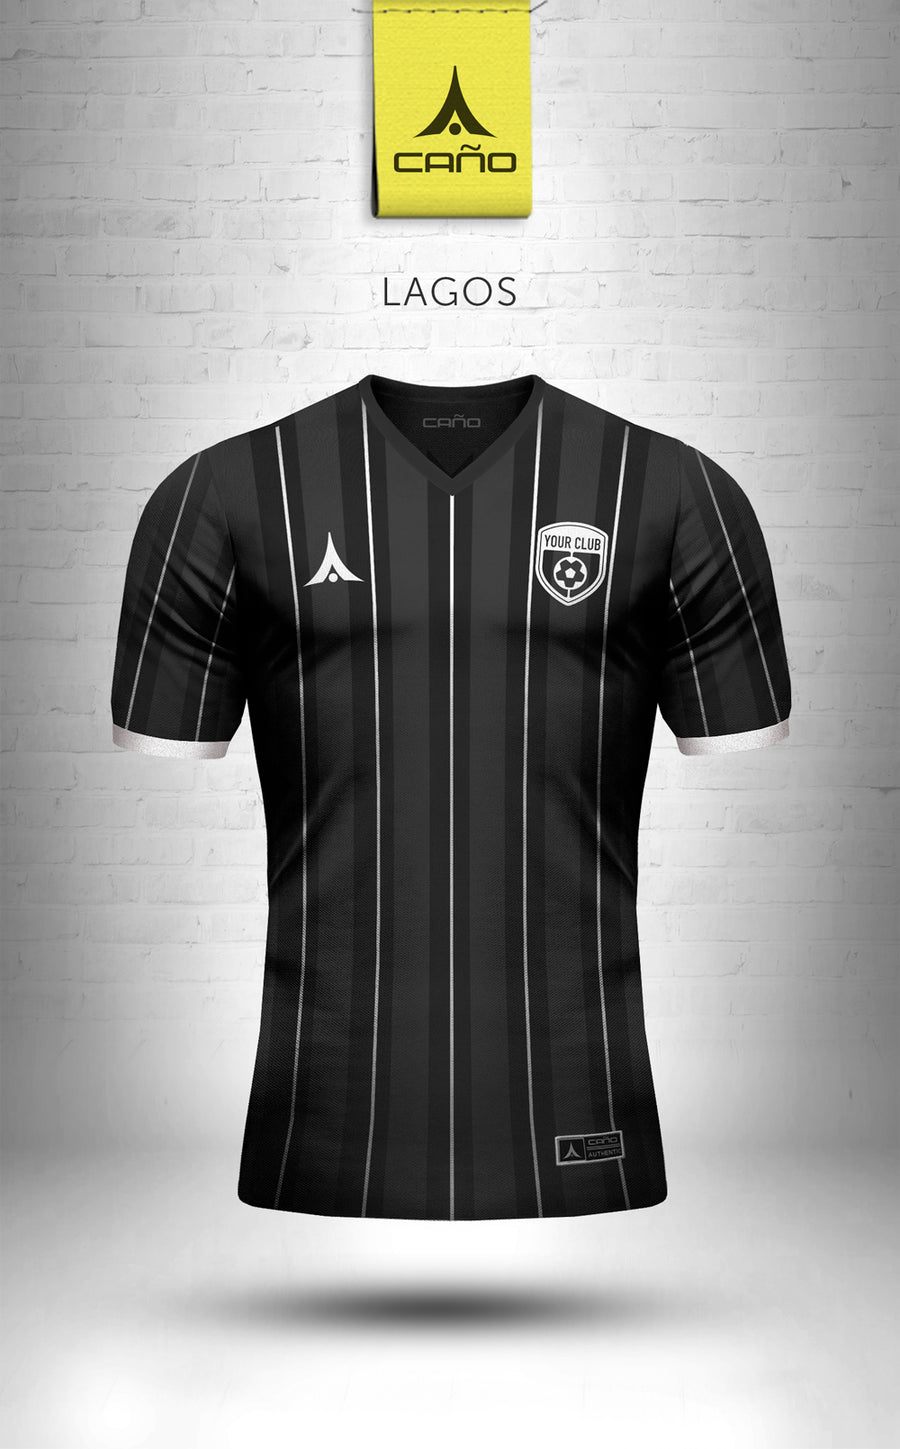 Lagos in black/white